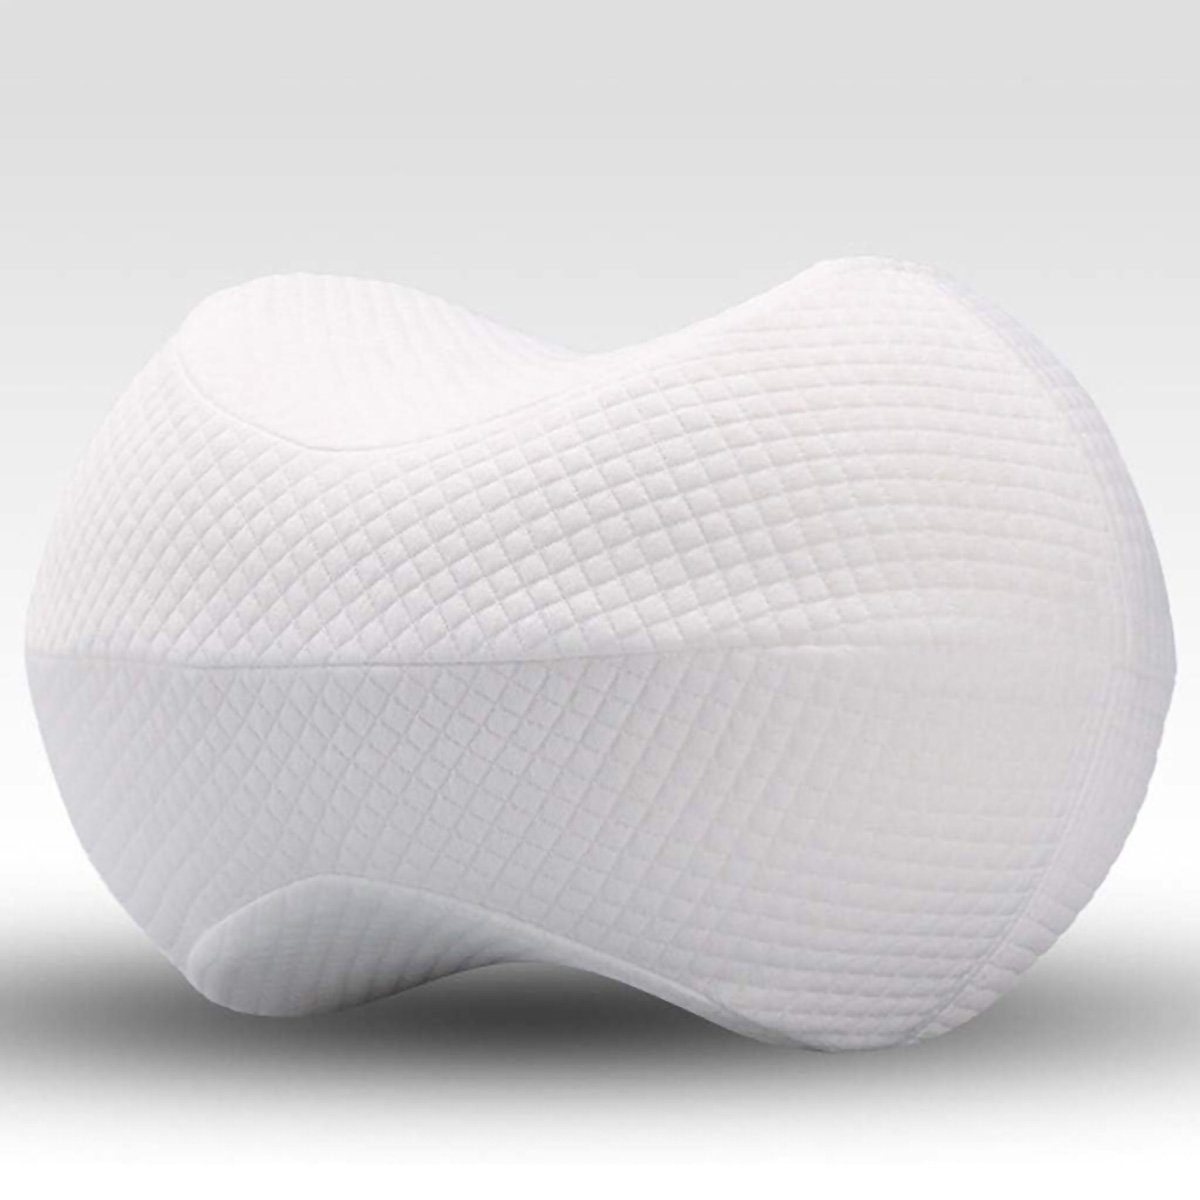 yozhiqu Steißbeinkissen Memory Foam Sleep Knee Pillow mit abnehmbarem, waschbarem Bezug, 1-tlg., Keilform für komfortable Unterstützung von Beinen, Rücken und Hüfte